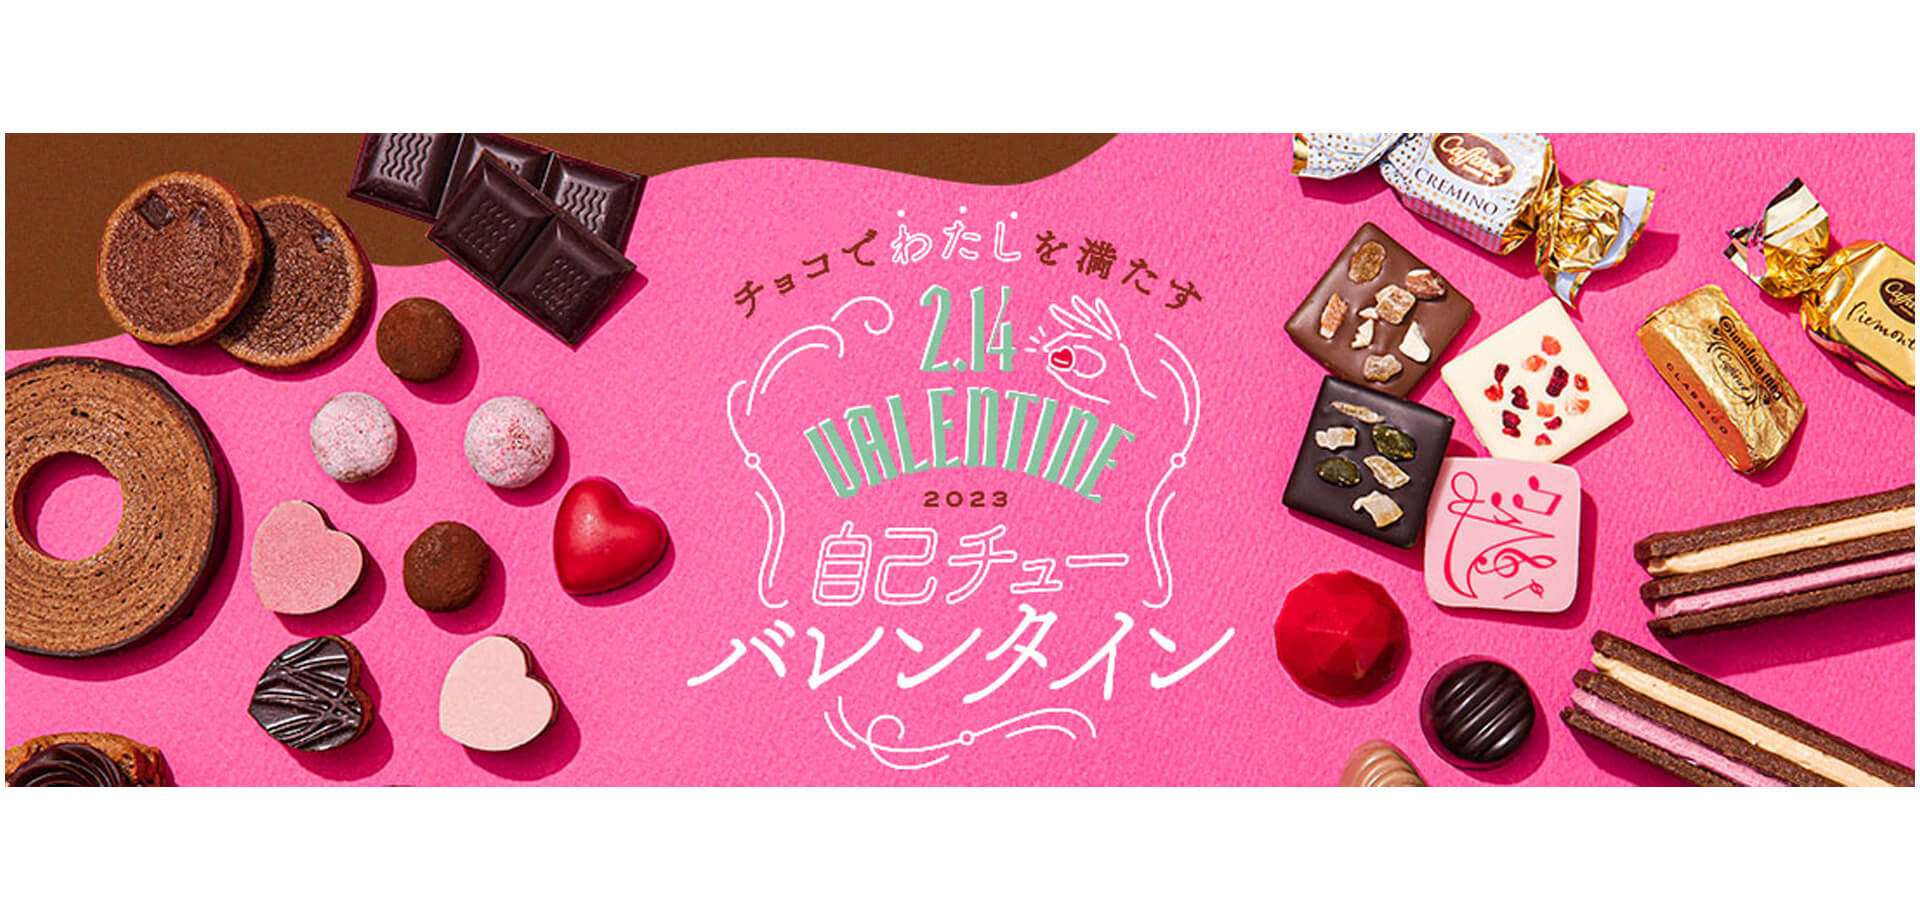 JR東日本クロスステーション デベロップメントカンパニー エキナカ商業施設「エキュート」「グランスタ」 バレンタインフェア チョコレート